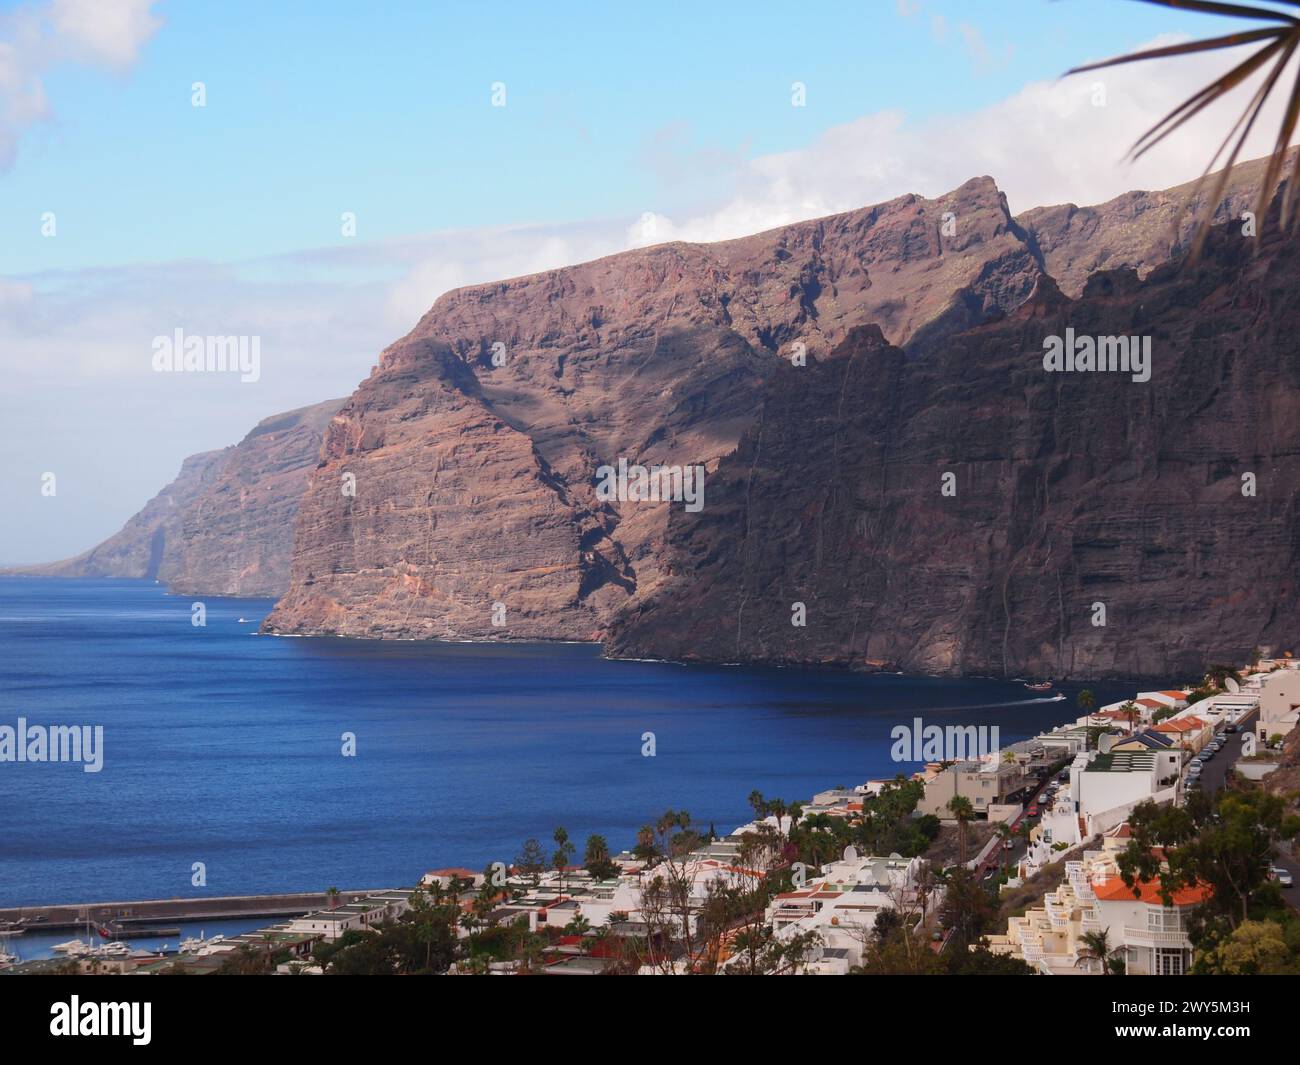 Acantilados de los Gigantes - Cliffs of the Giants (Santiago del Teide, Tenerife, Canary Islands, Spain) Stock Photo